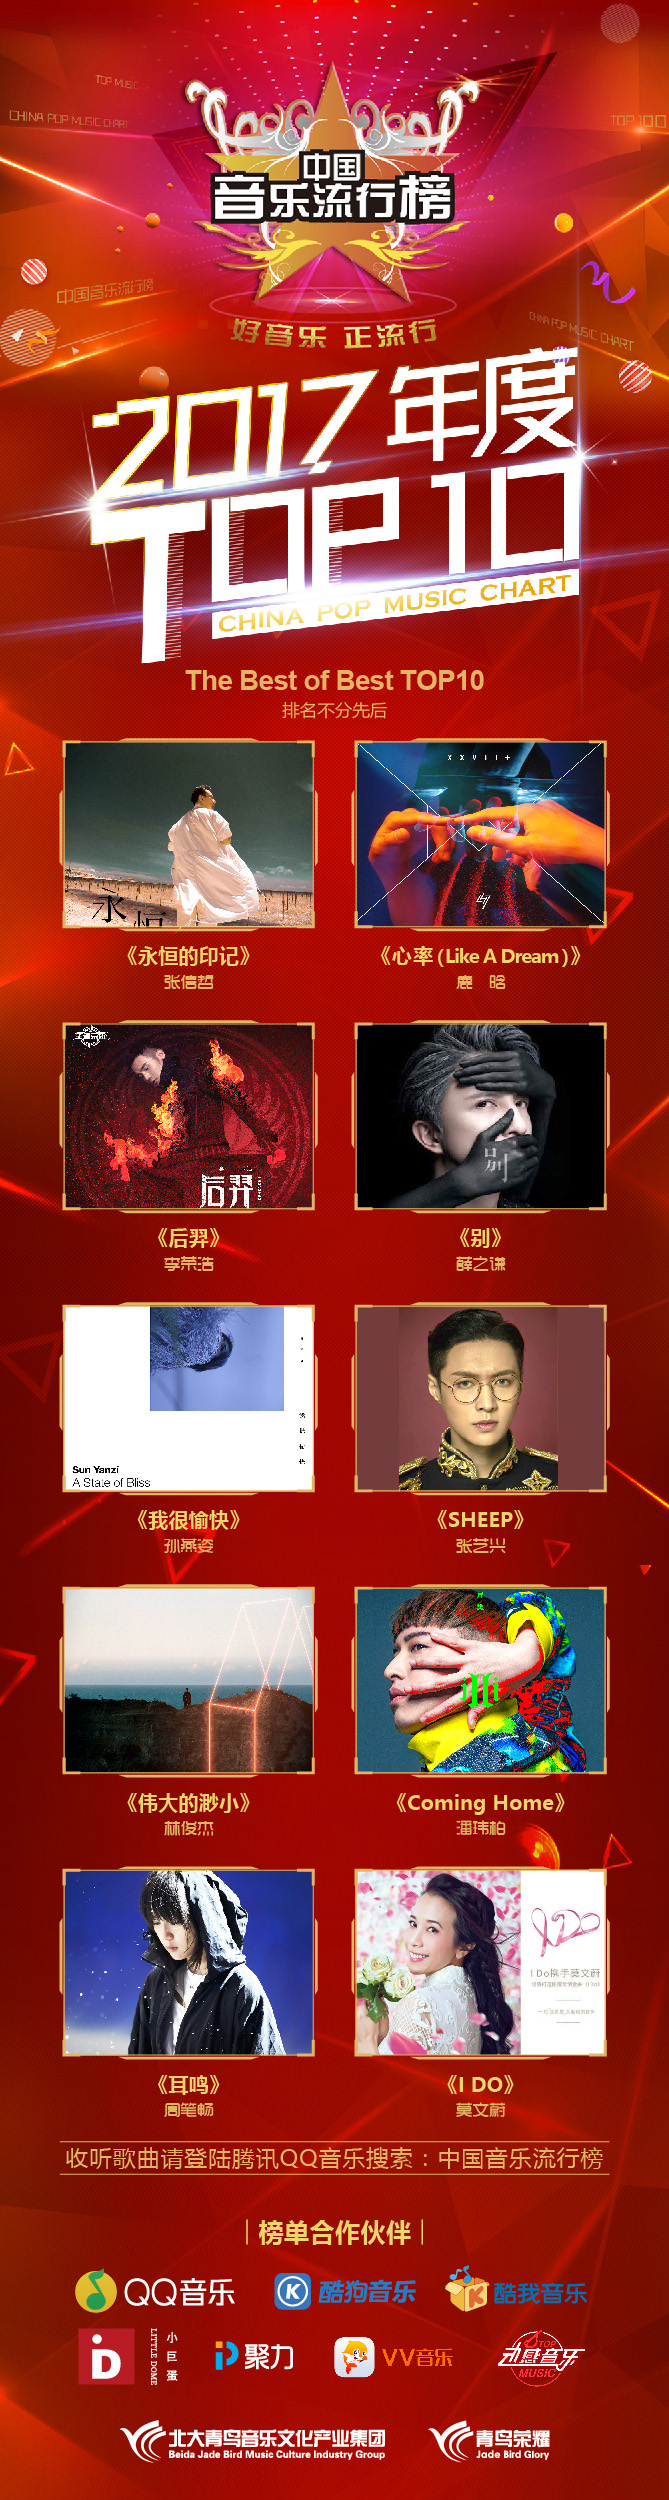 2017音乐排行_中国音乐流行榜2017年度TOP10获奖名单揭晓